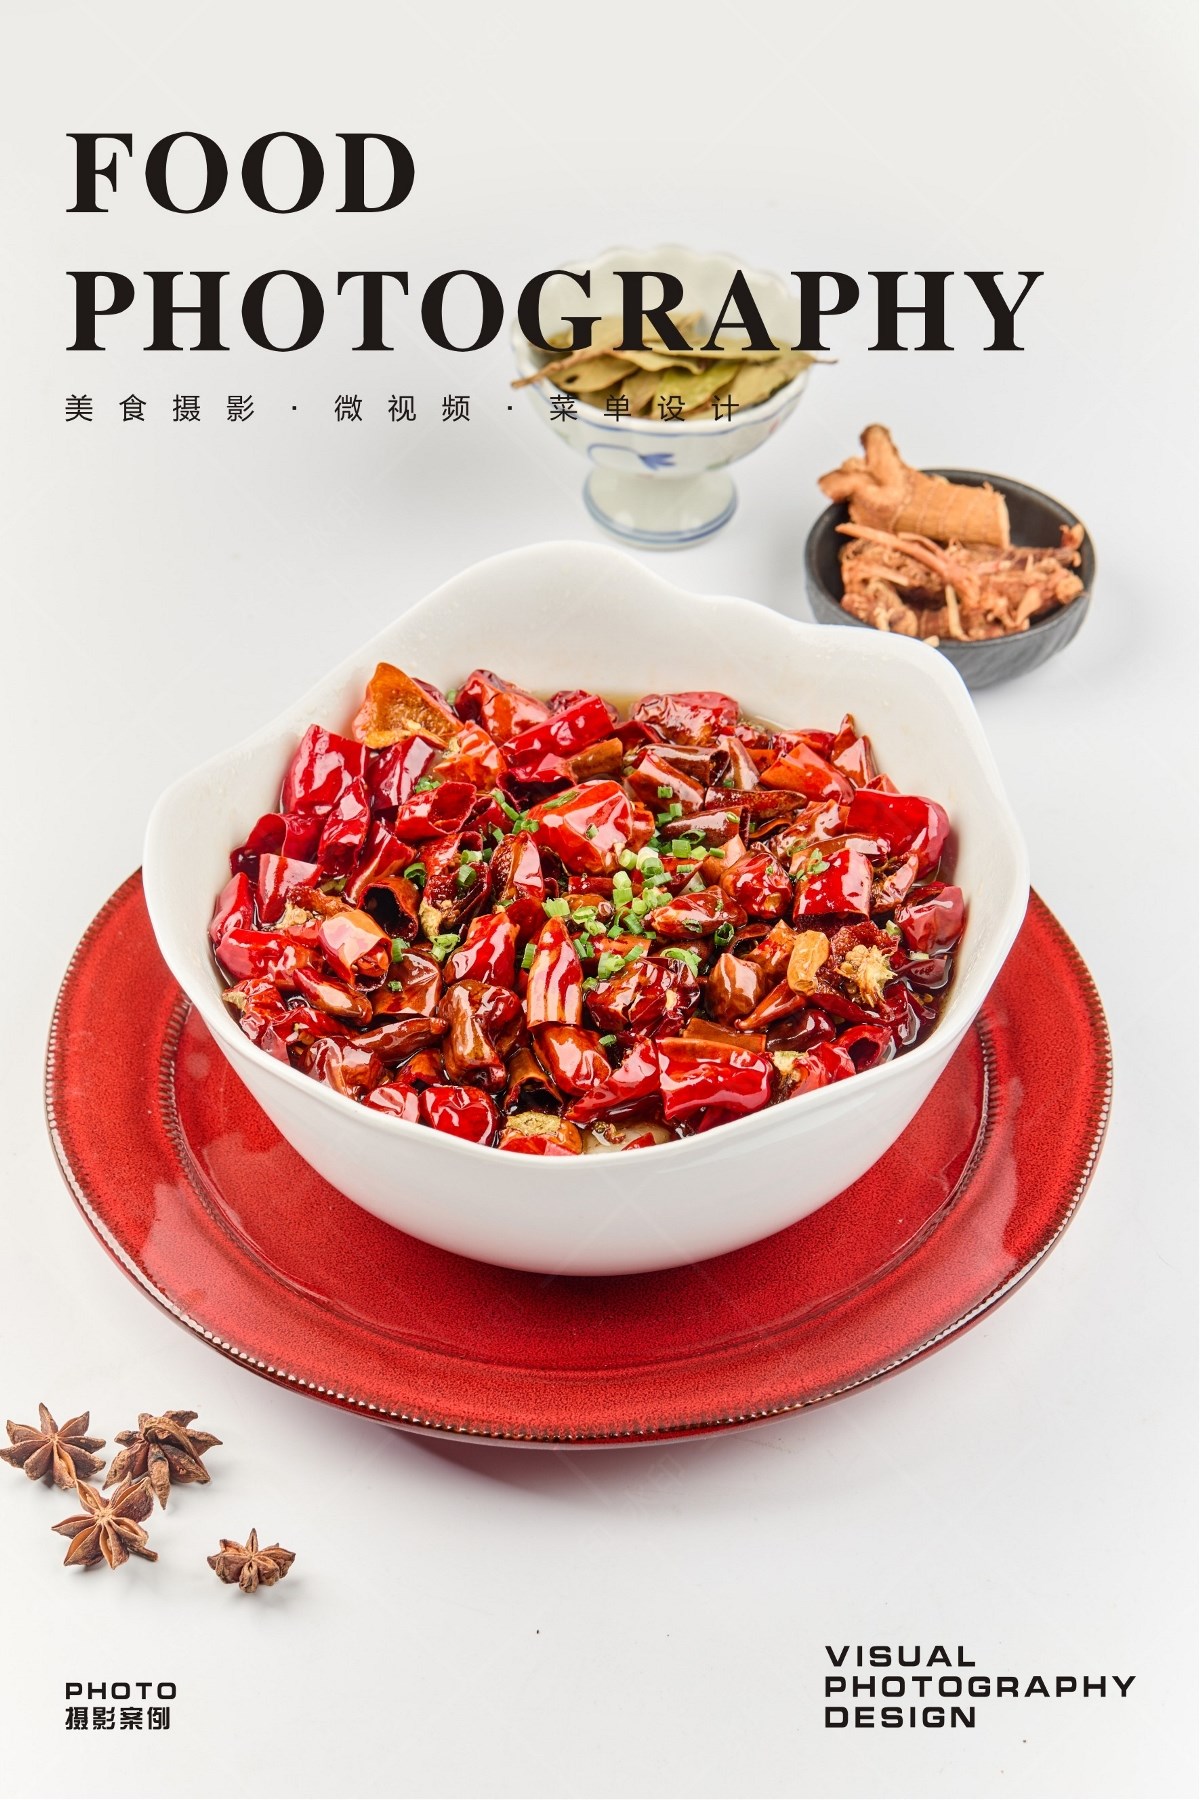 武汉美食摄影|美团首图|菜单拍摄|湖北菜摄影